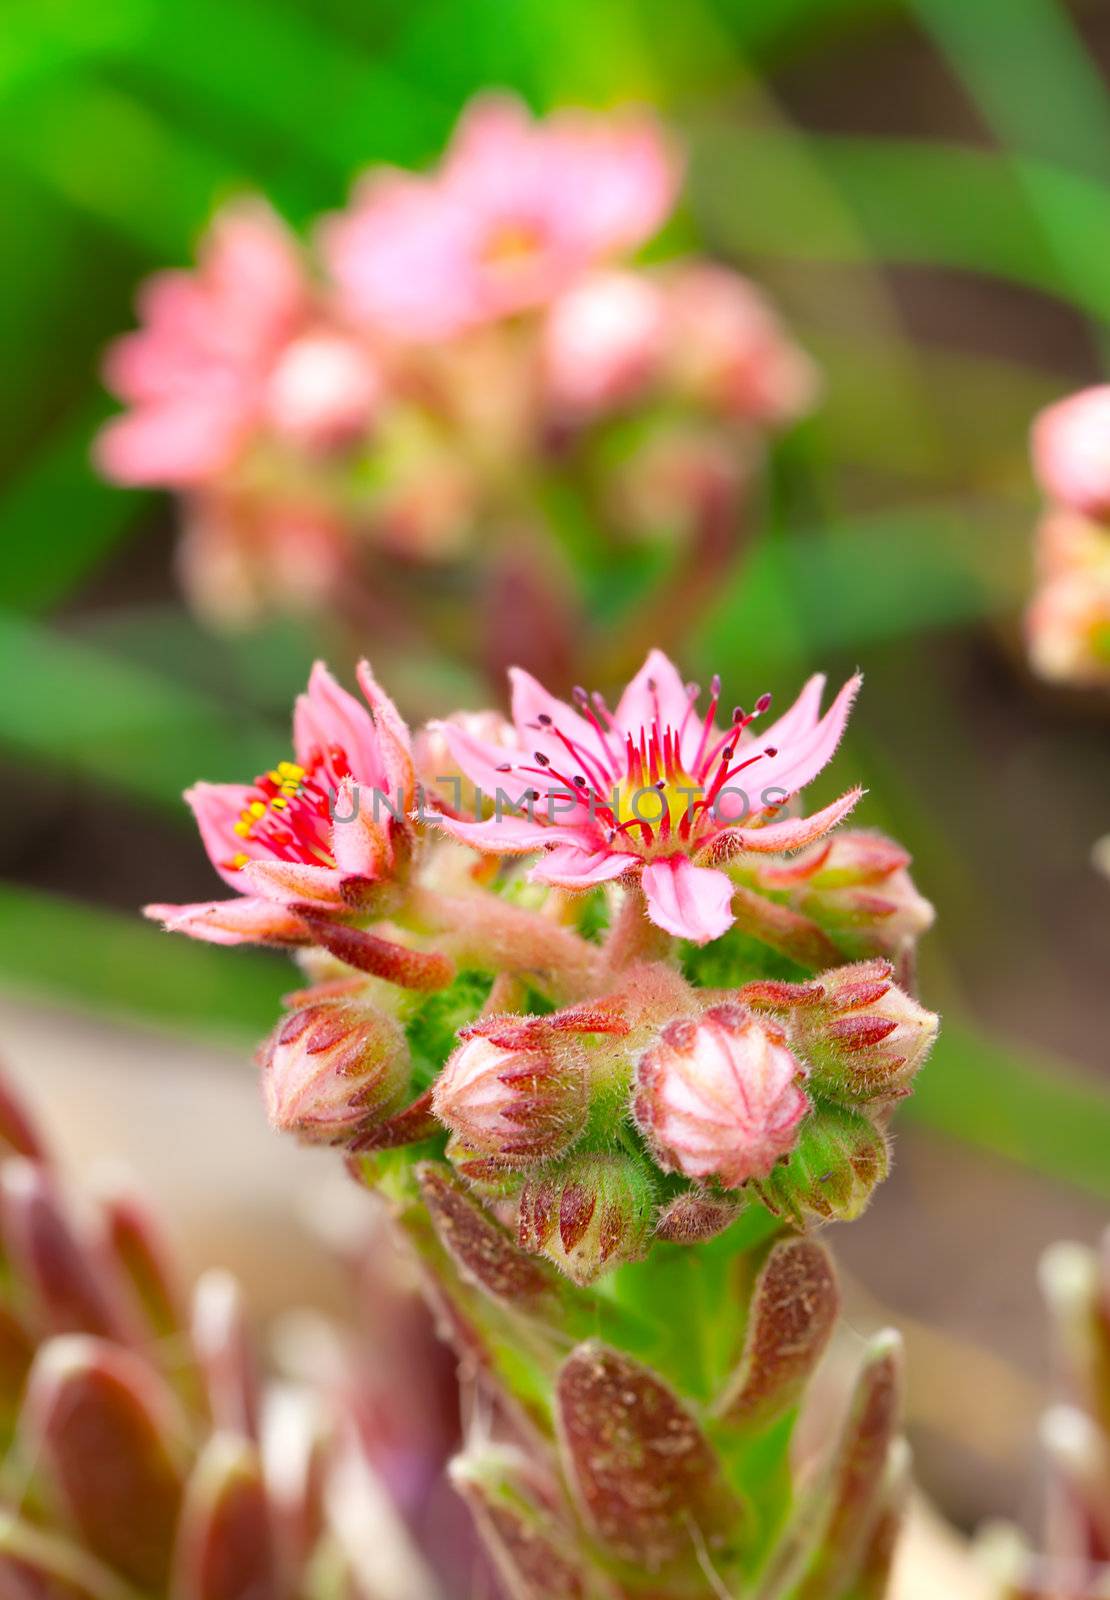 Flower of houseleek (sempervivum). Decorative garden flower. by motorolka